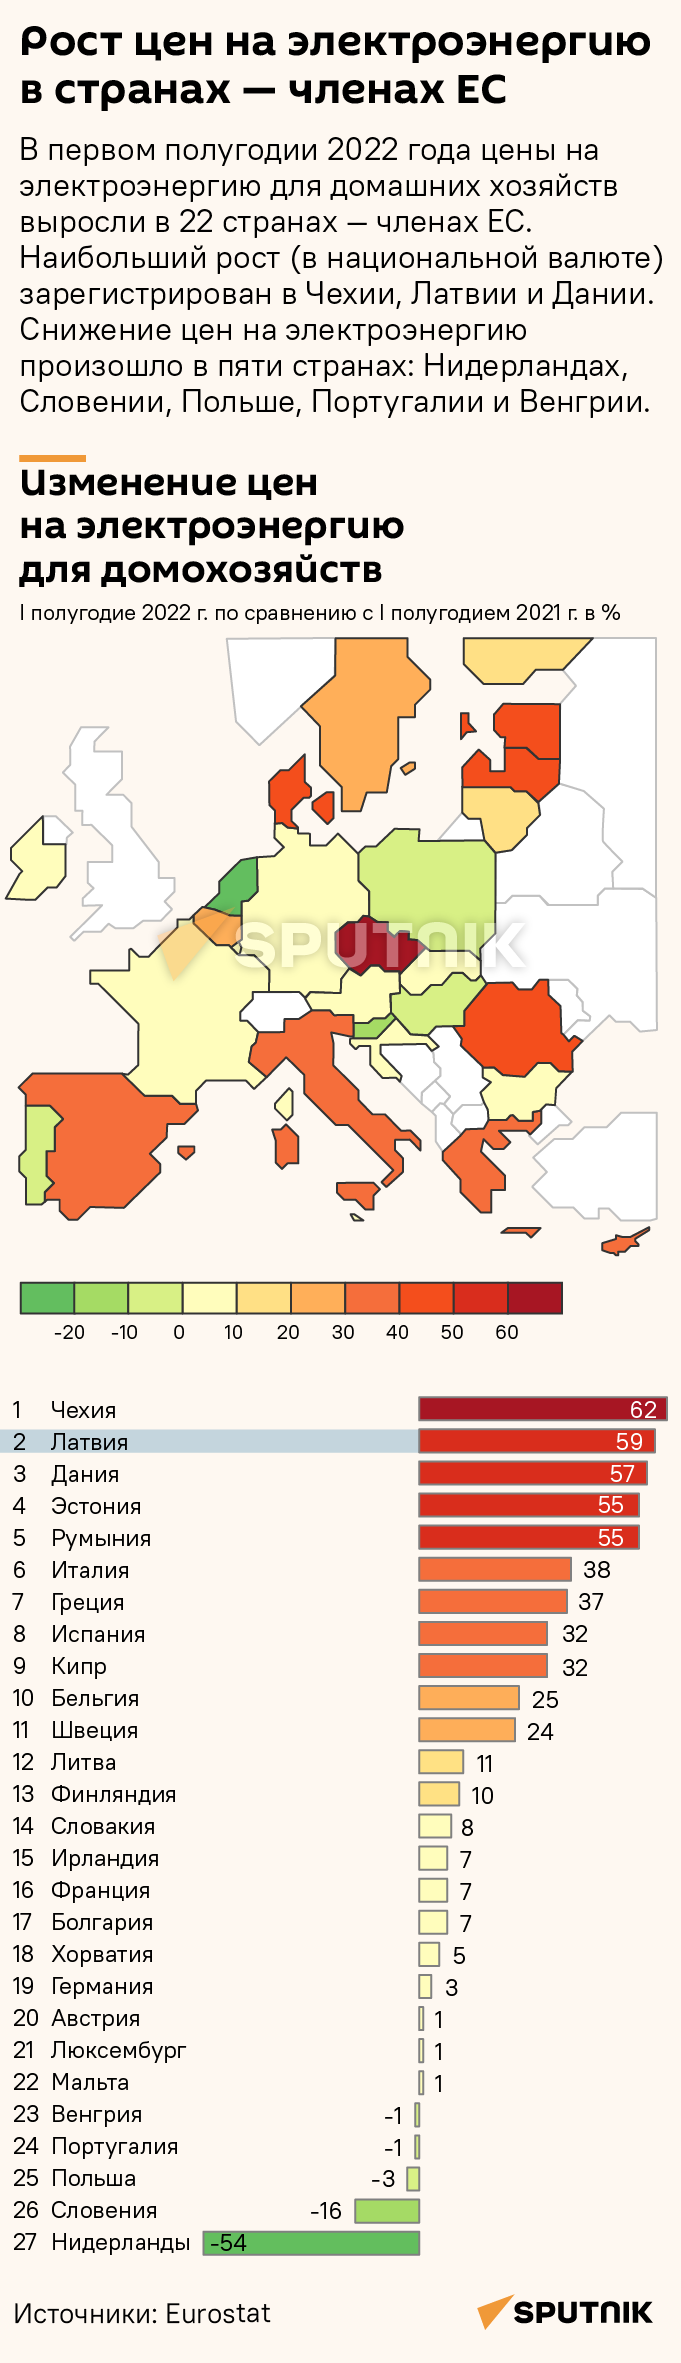 Рост цен на электроэнергию в странах — членах ЕС - Sputnik Грузия